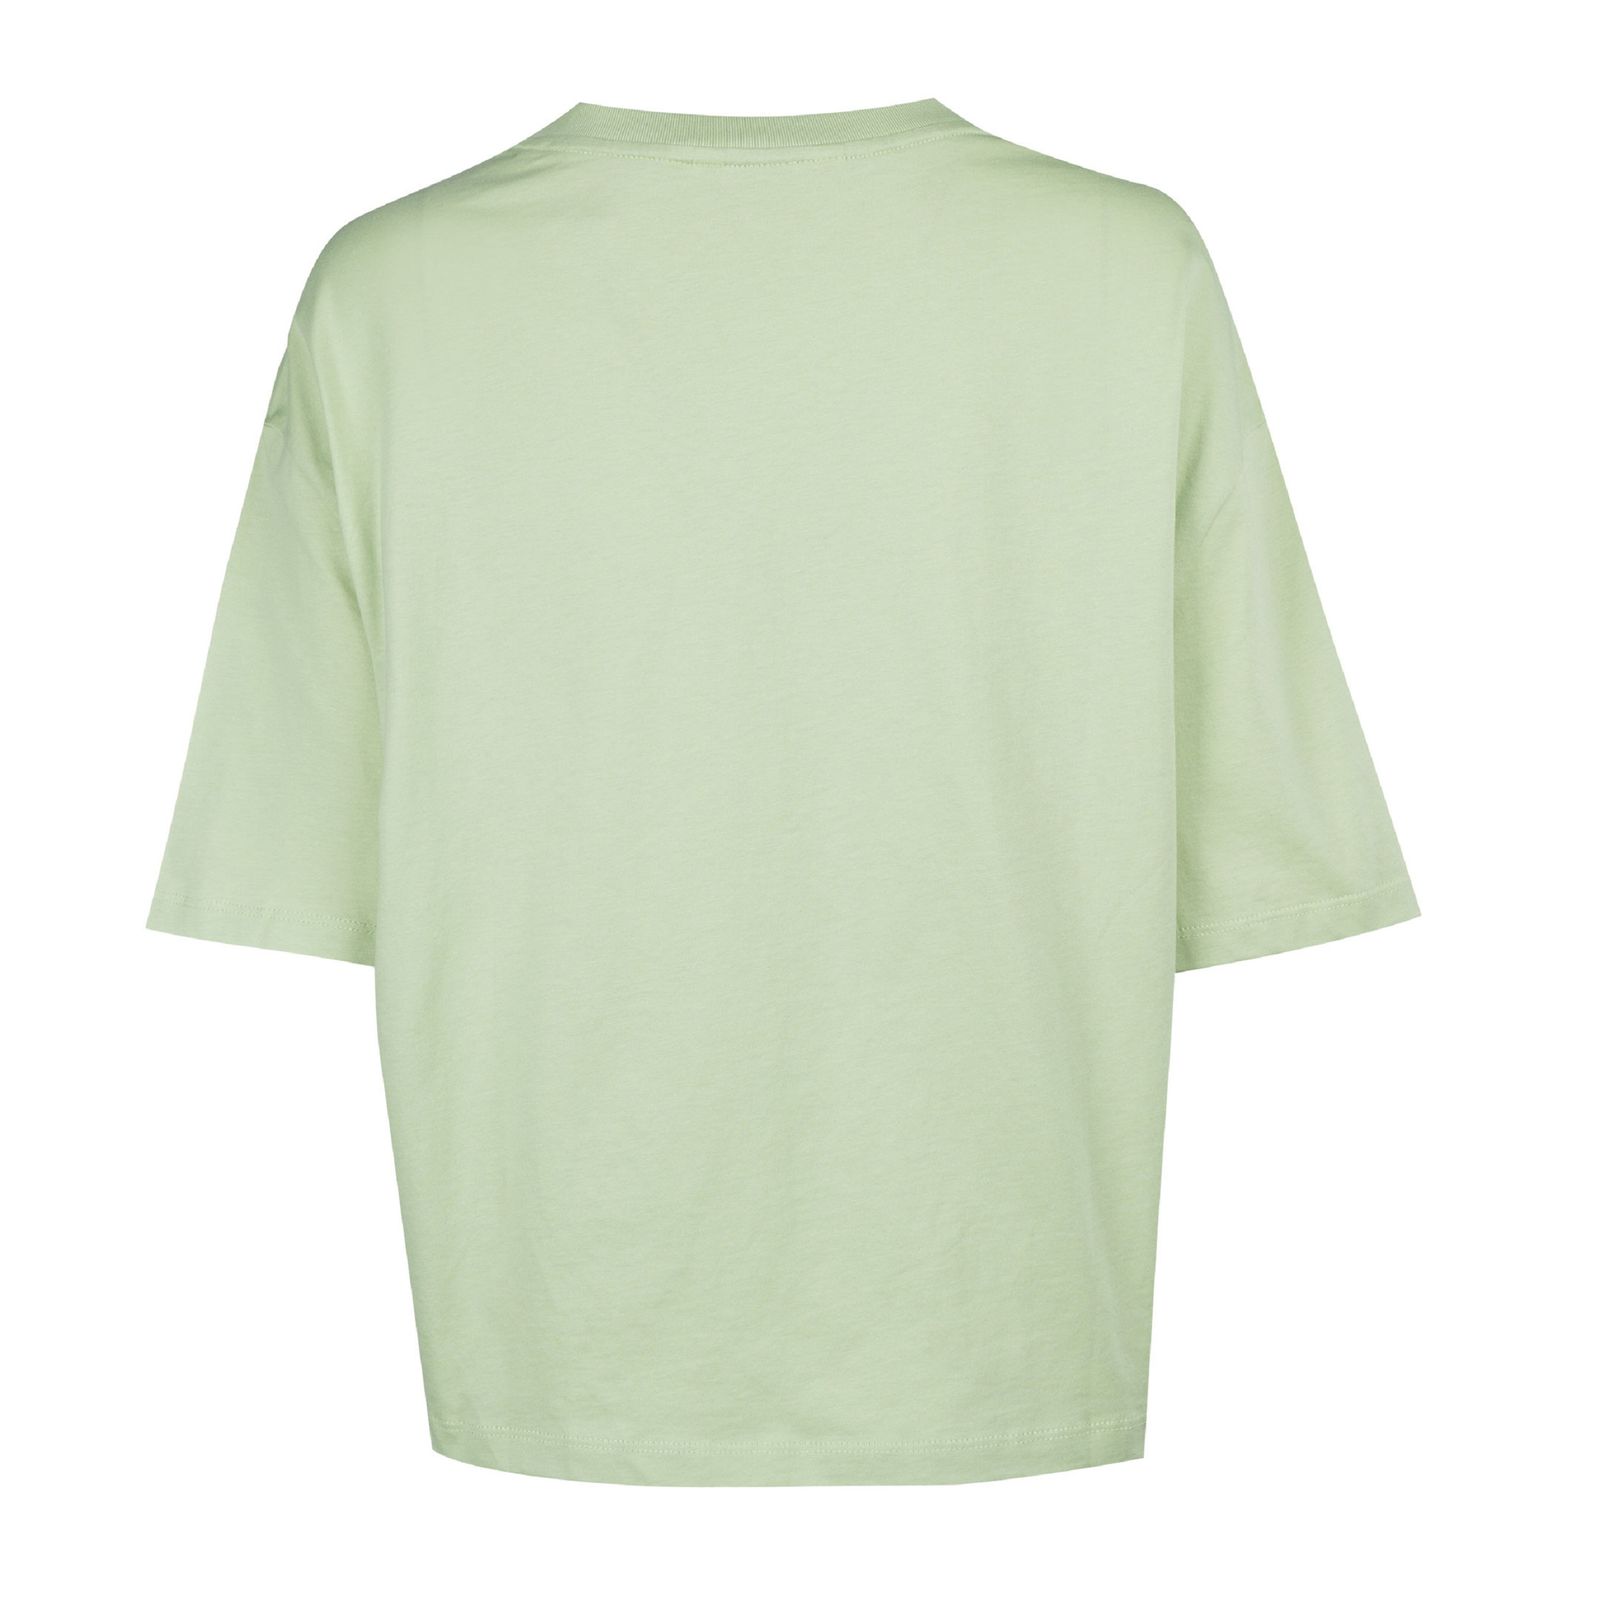 تی شرت آستین کوتاه زنانه جین وست مدل یقه گرد کد 1551206 رنگ سبز روشن -  - 2